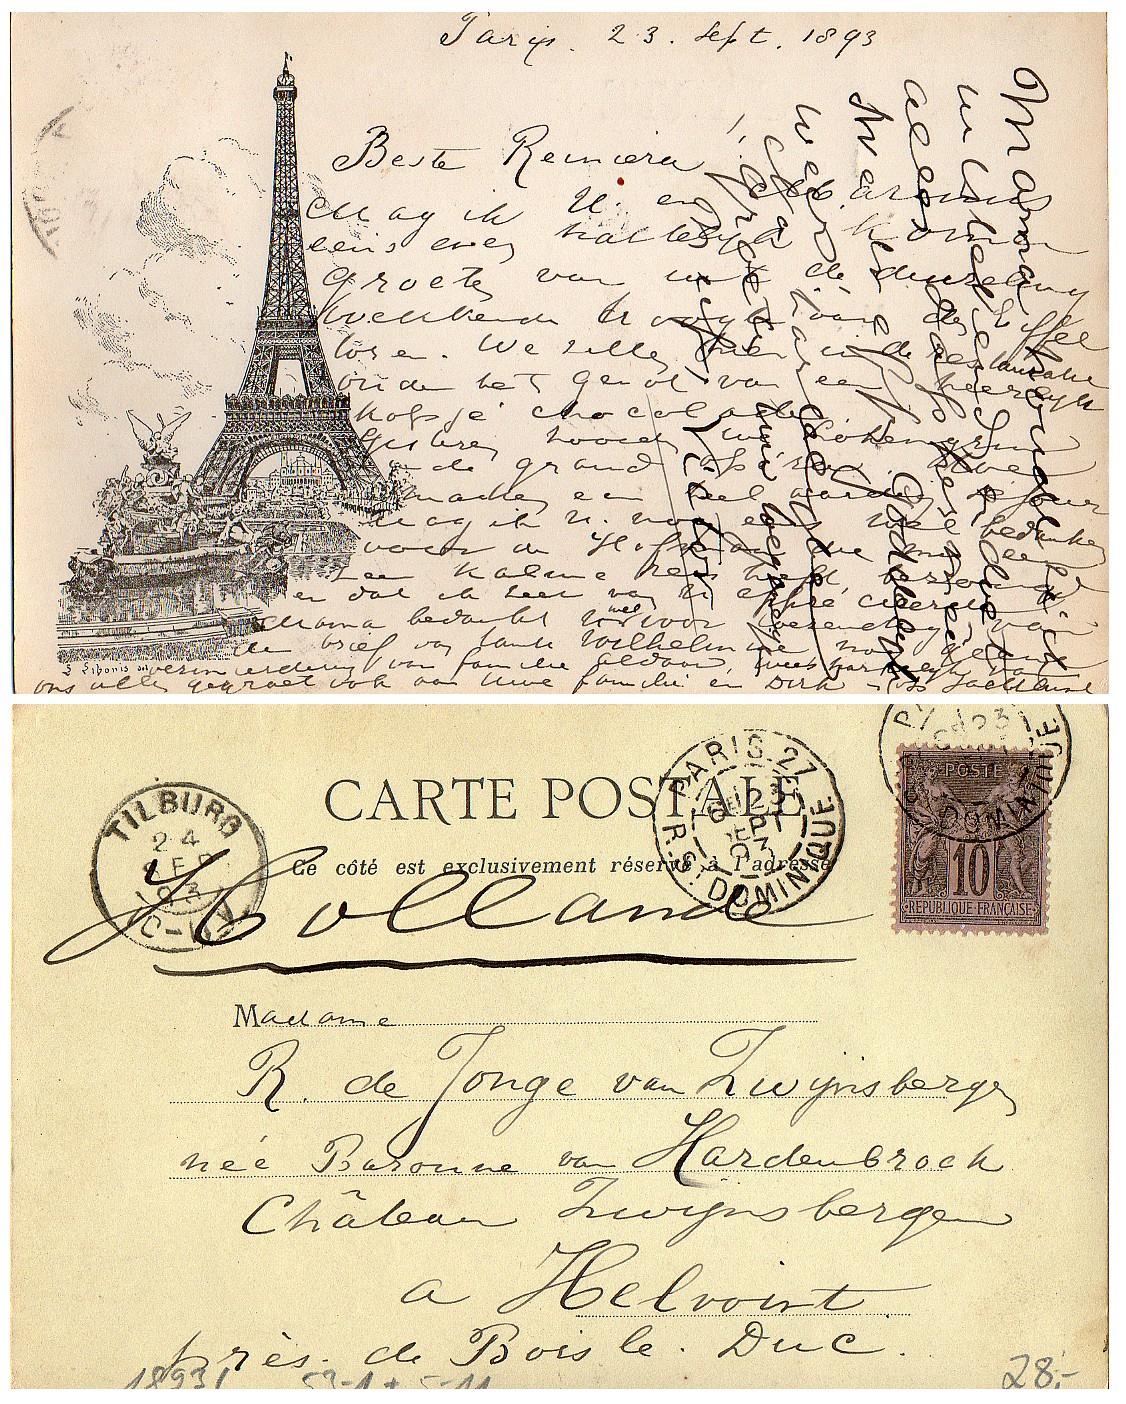 Paris le 23 sept 1893